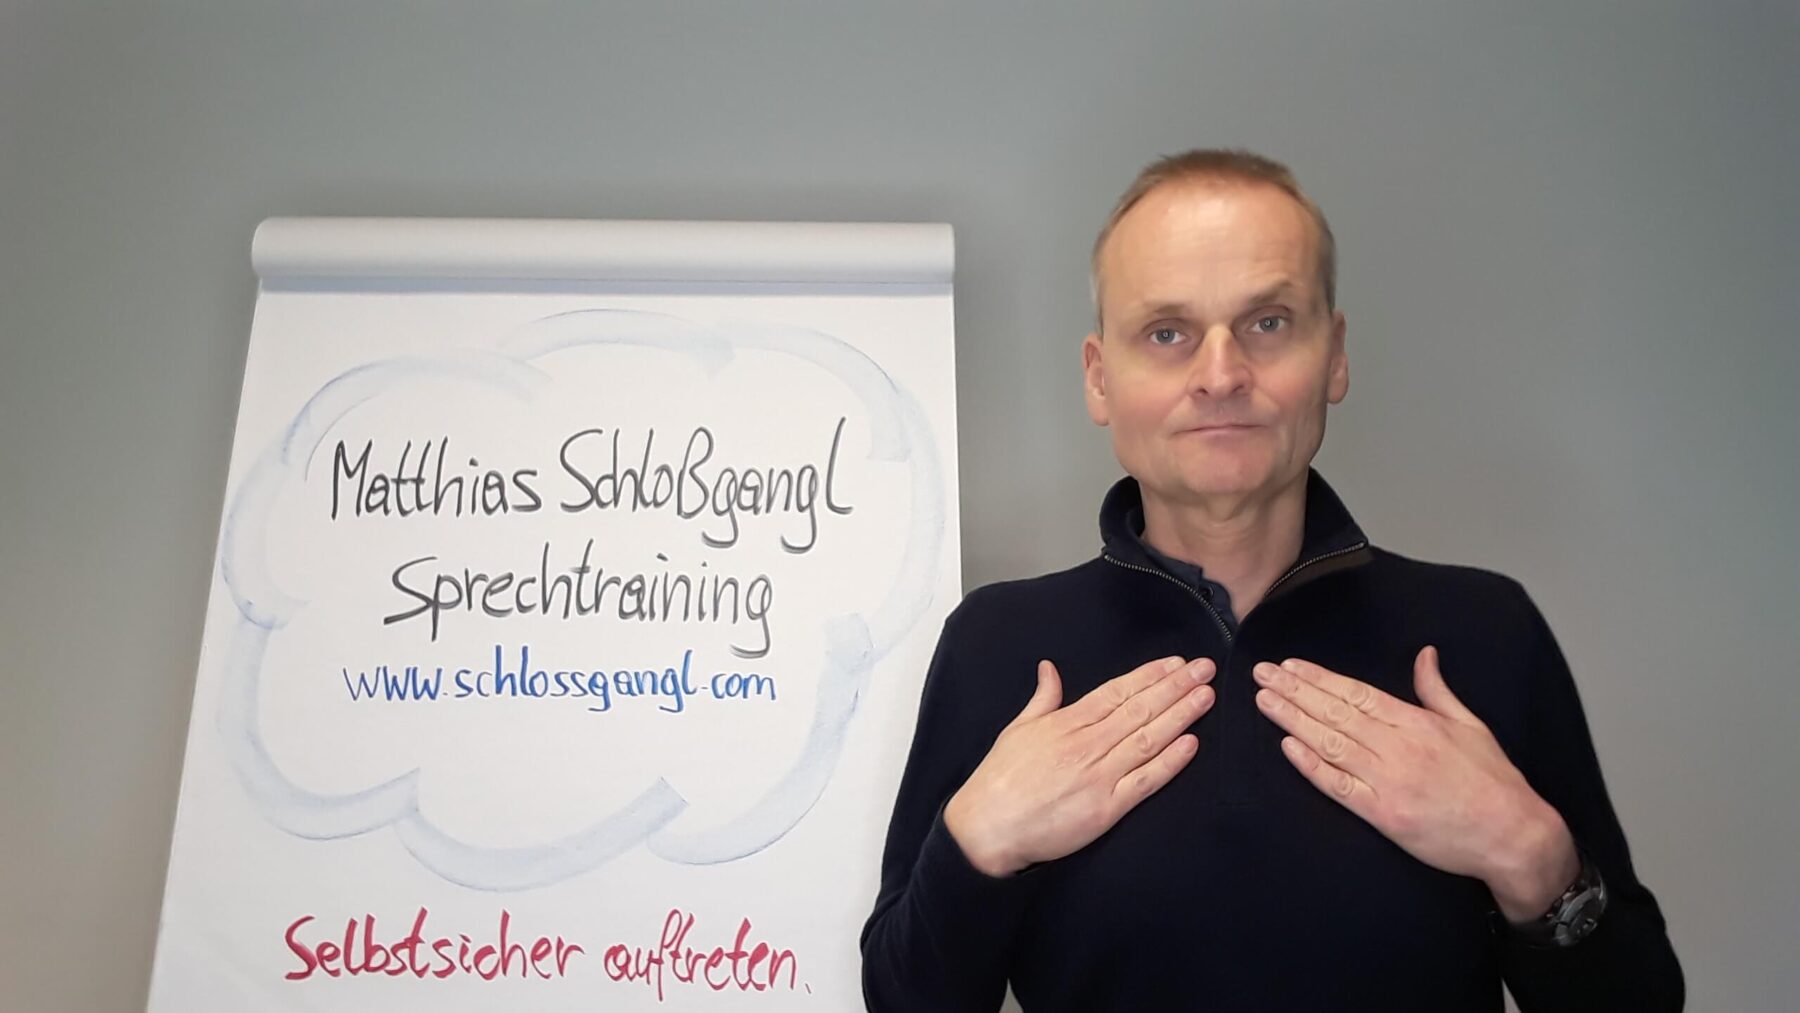 Atemübung In Bereiche Atmen von Matthias Schloßgangl erklärt